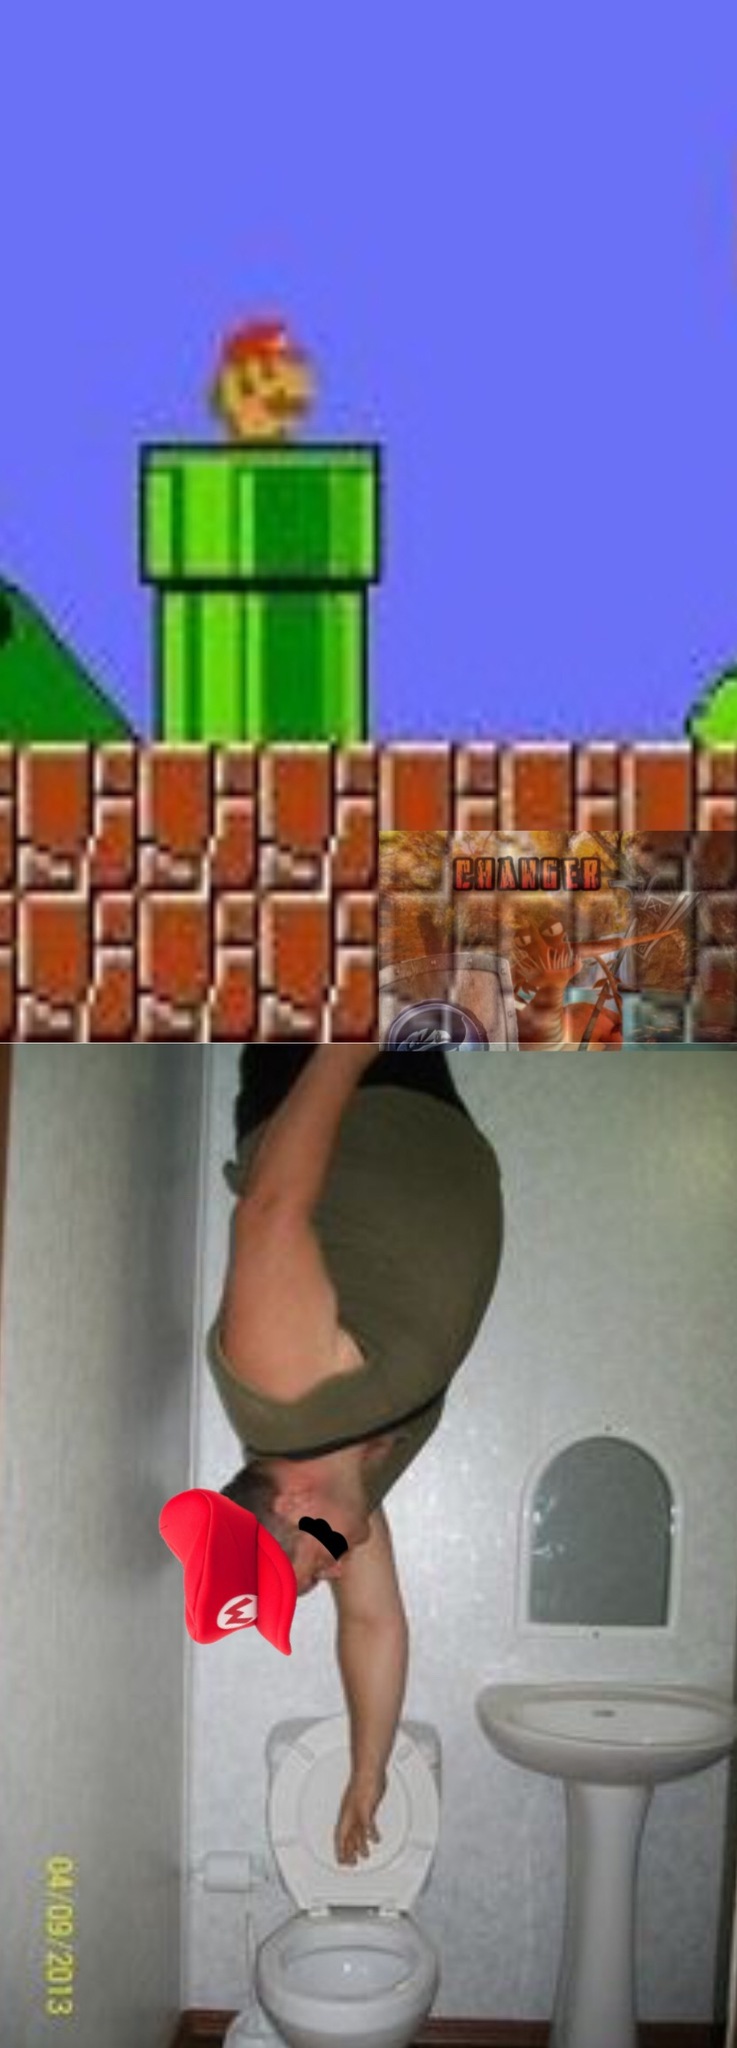 La realidad de Mario - meme